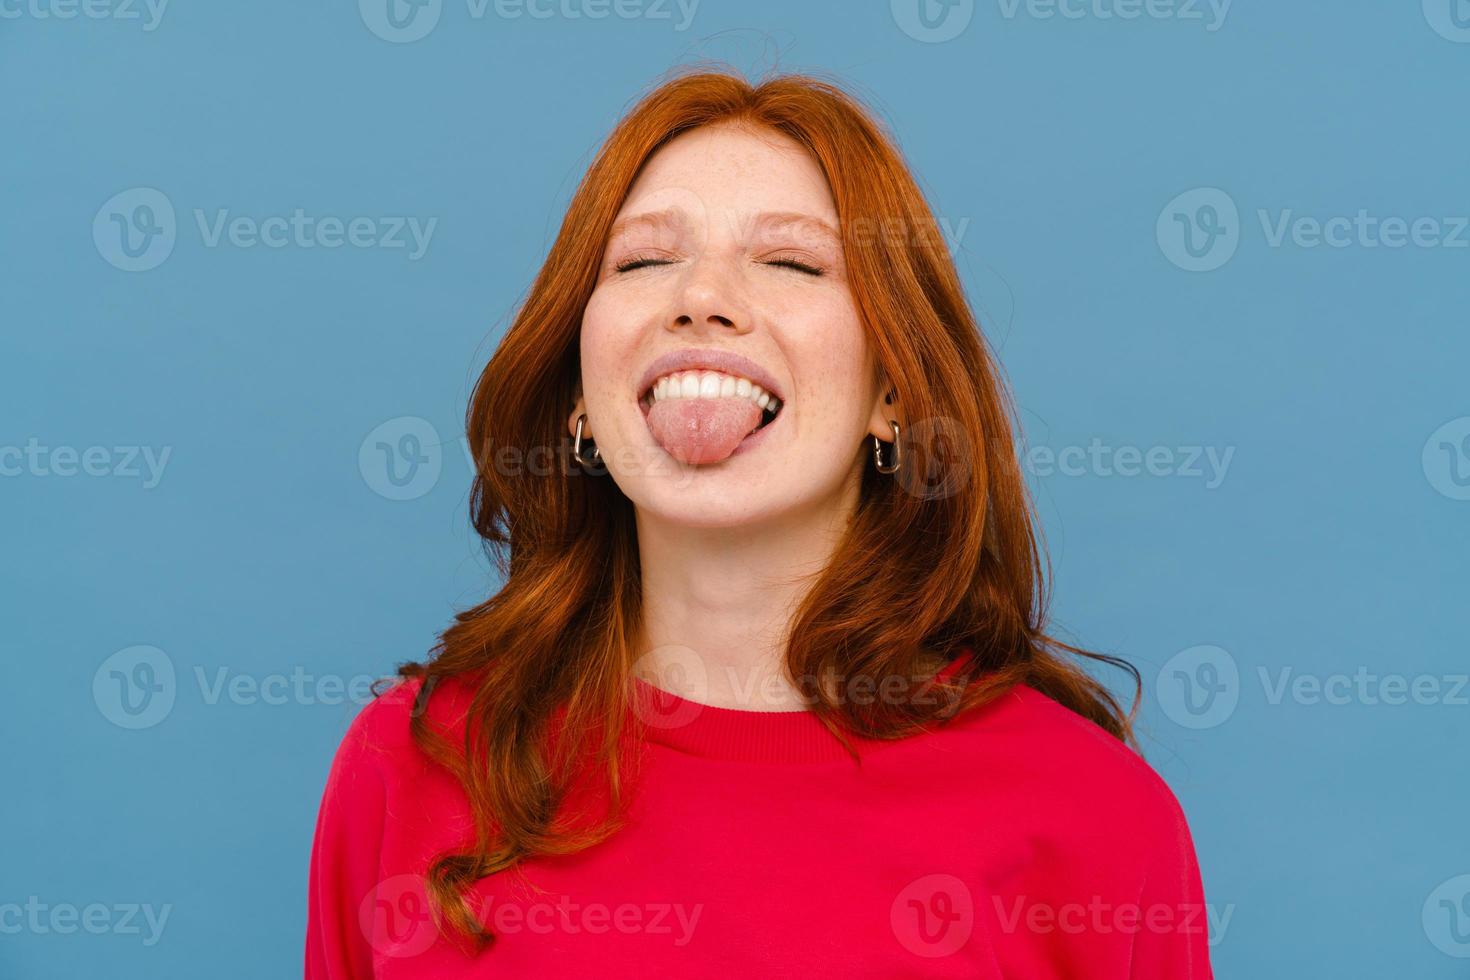 gembervrouw met rode trui die lacht terwijl ze haar tong laat zien foto